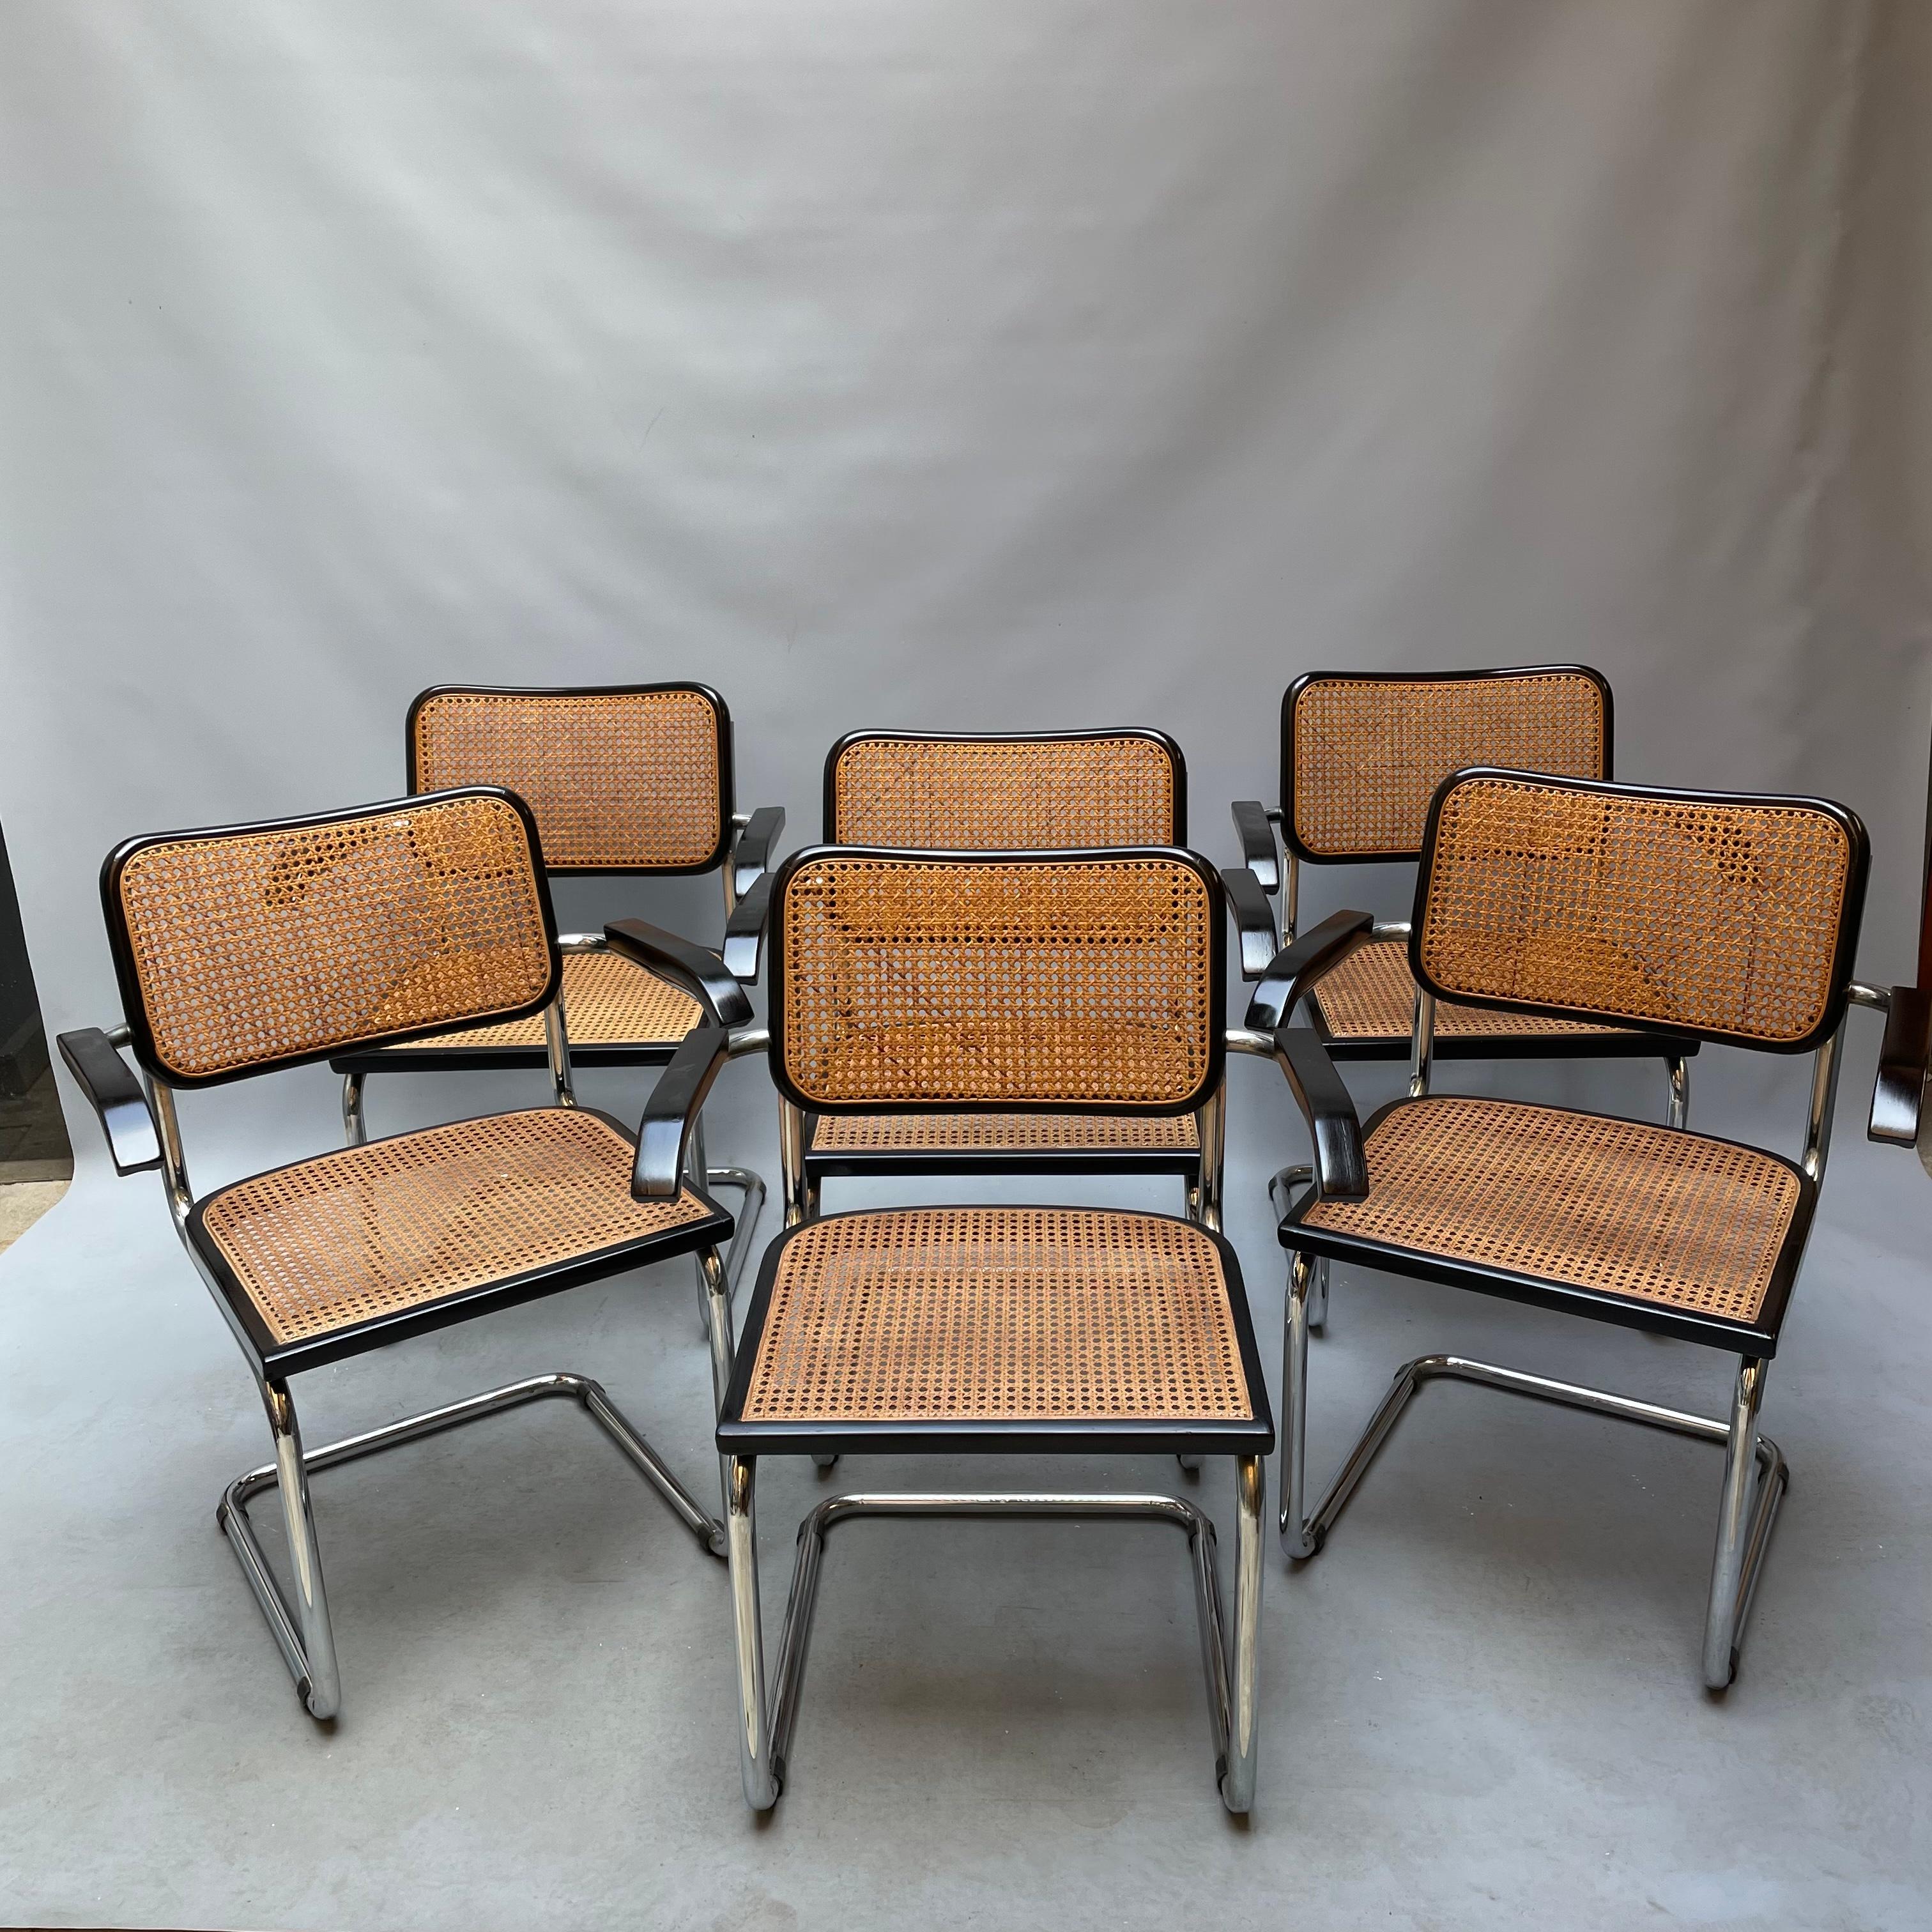 Sessel mit Polsterung aus naturlackierter Buche oder schwarz lackiert. Das Gerüst aus Wiener Stroh wird in Handarbeit erstellt. Iconic Projekt des zwanzigsten Jahrhunderts, schlagen wir eine Reihe von 6 Stühlen, schwer zu finden Original aus den